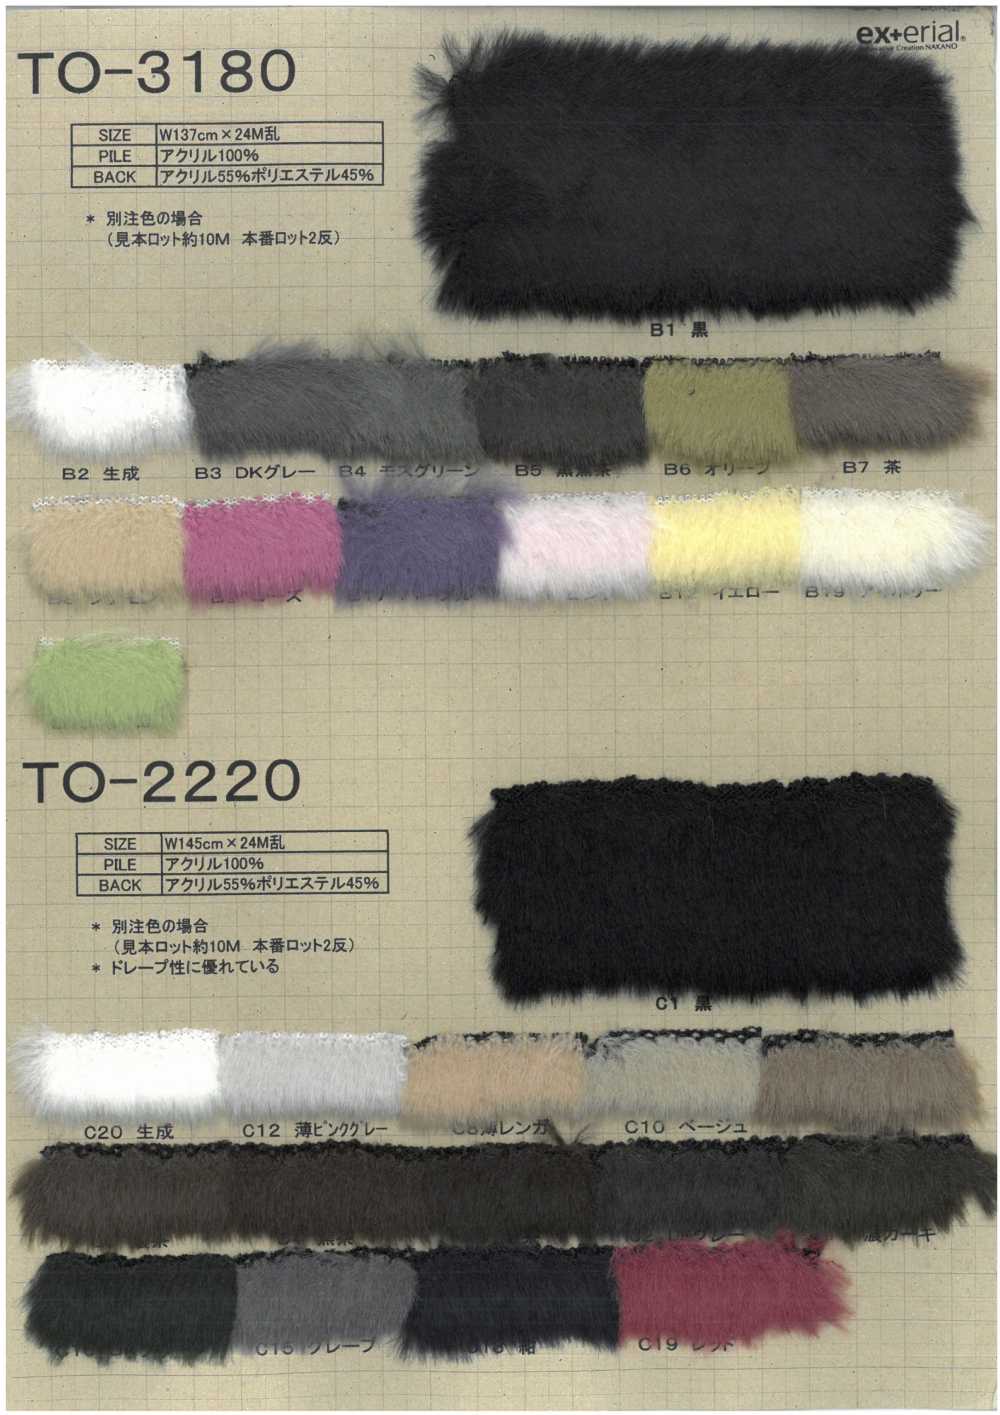 TO-3180 Pelliccia Artigianale [Mouton][Tessile / Tessuto] Industria Delle Magliette A Nakano